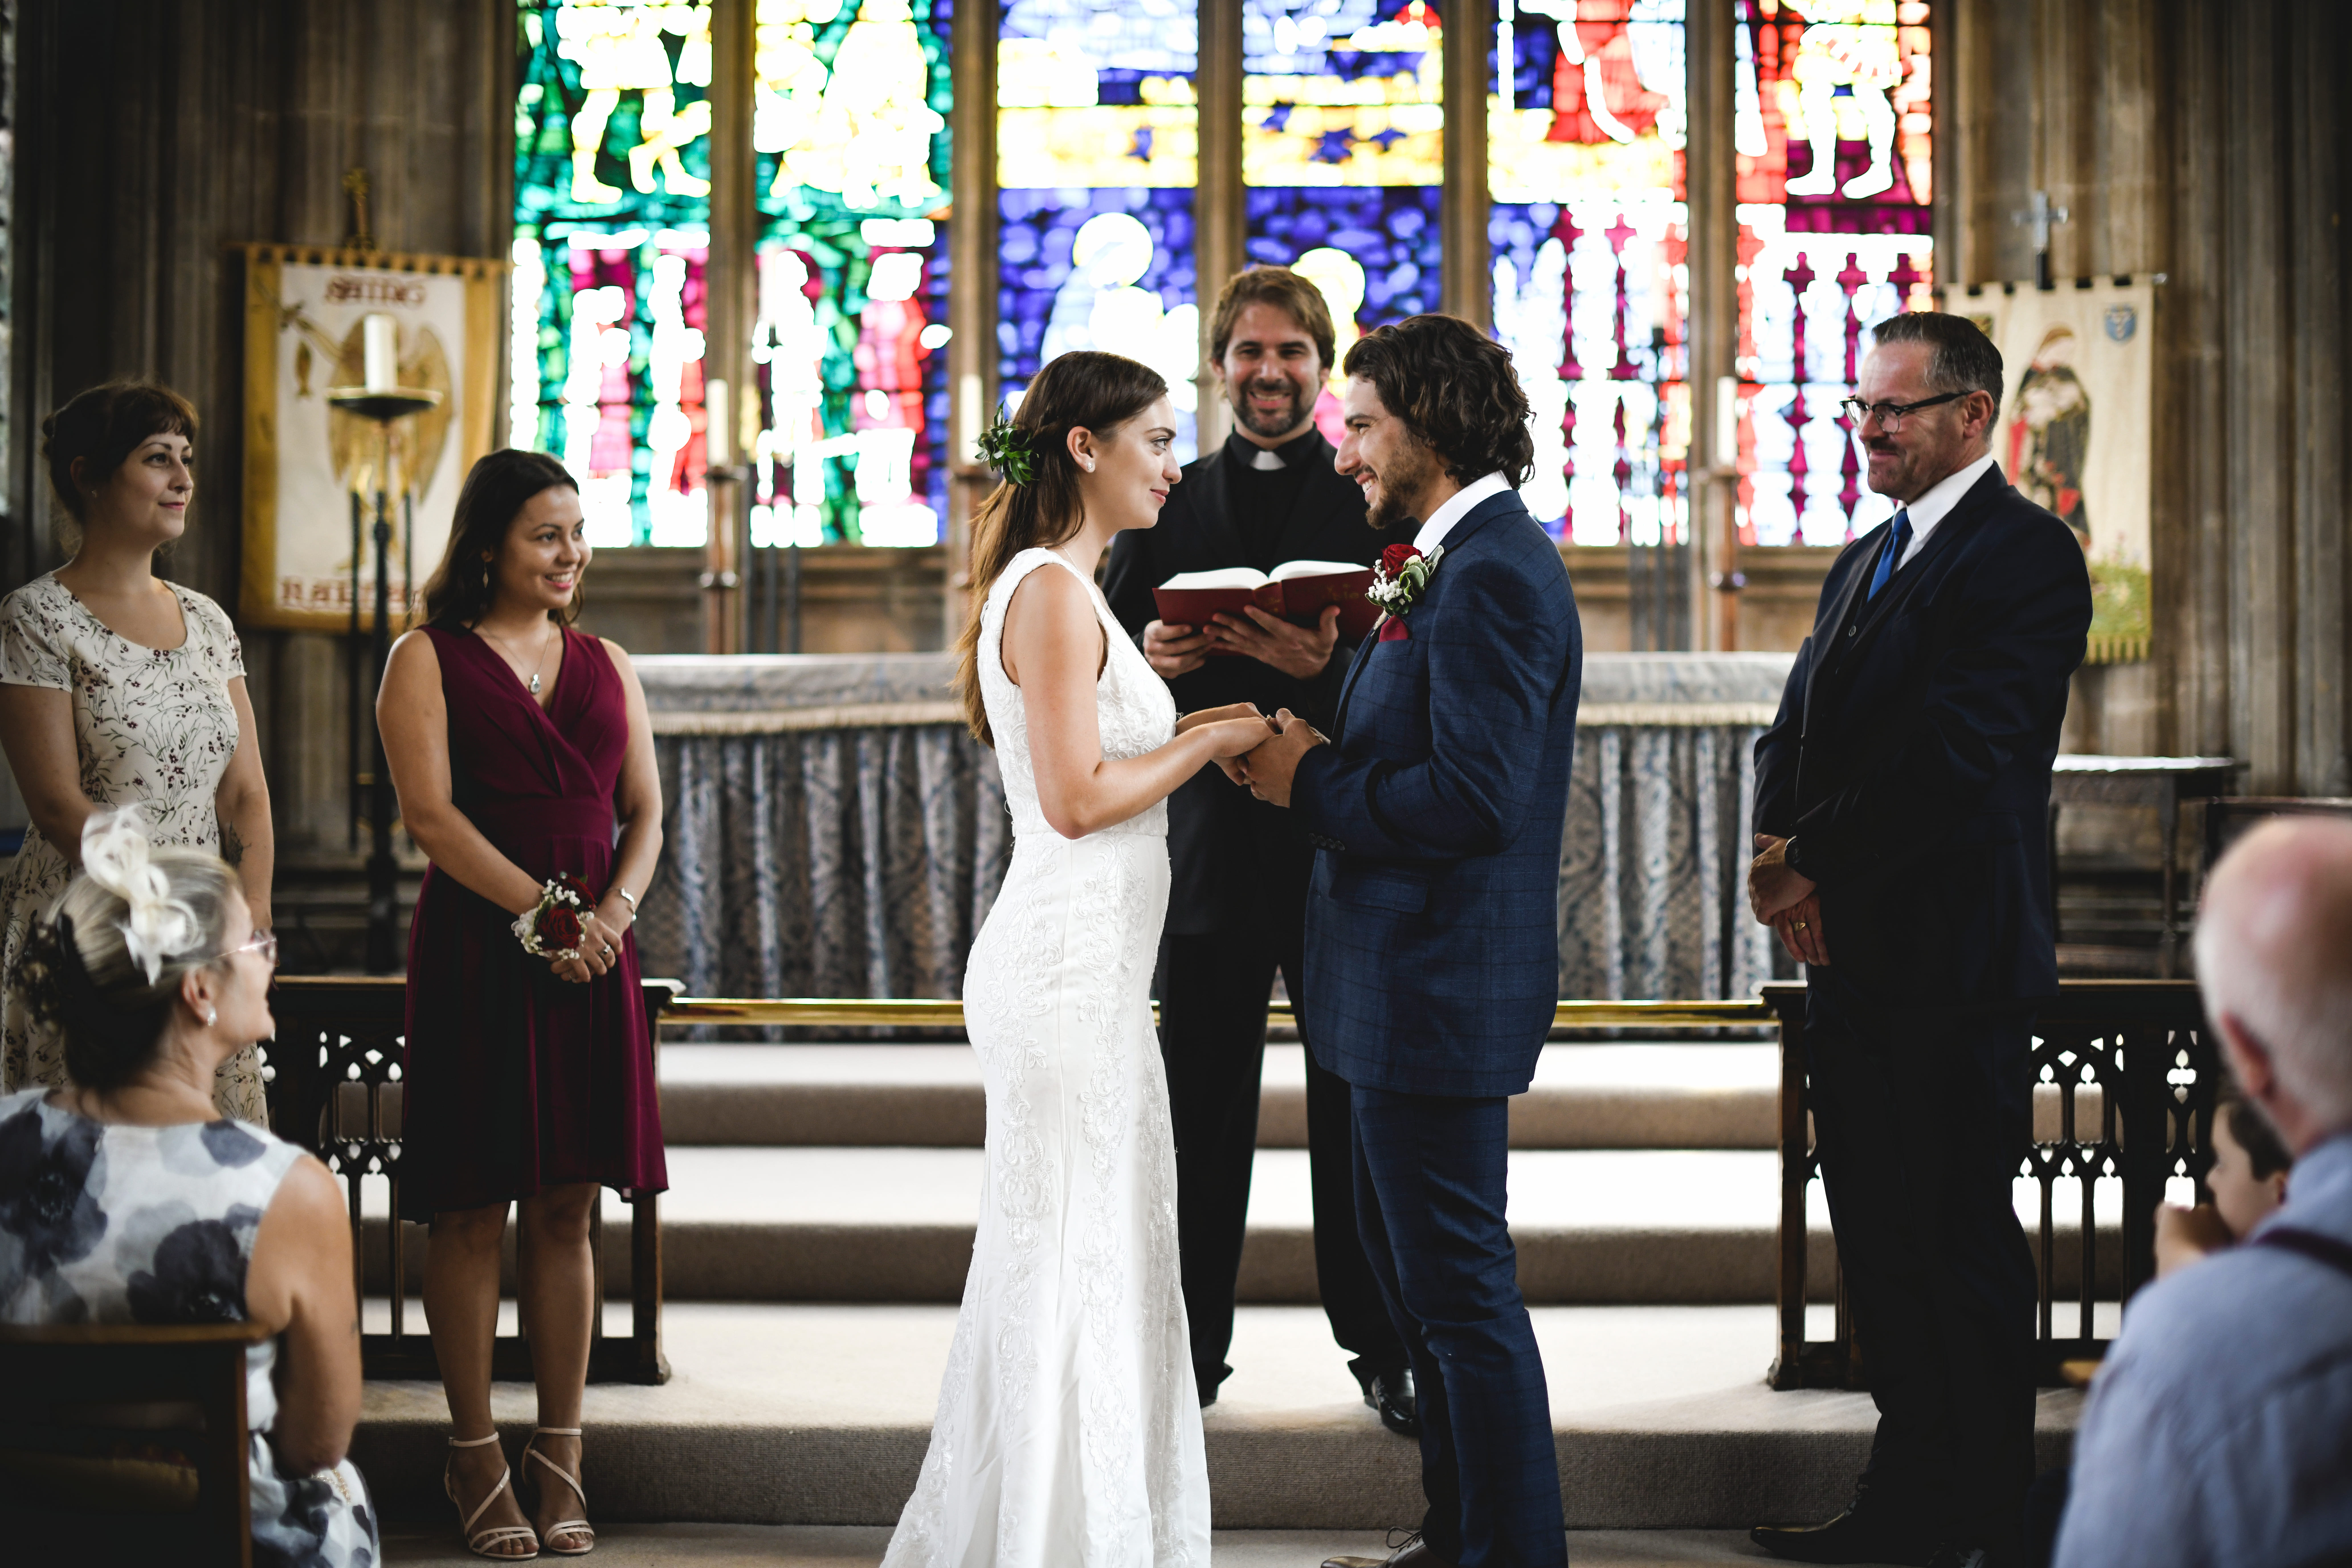 La mariée et le marié devant l'autel | Source : Shutterstock